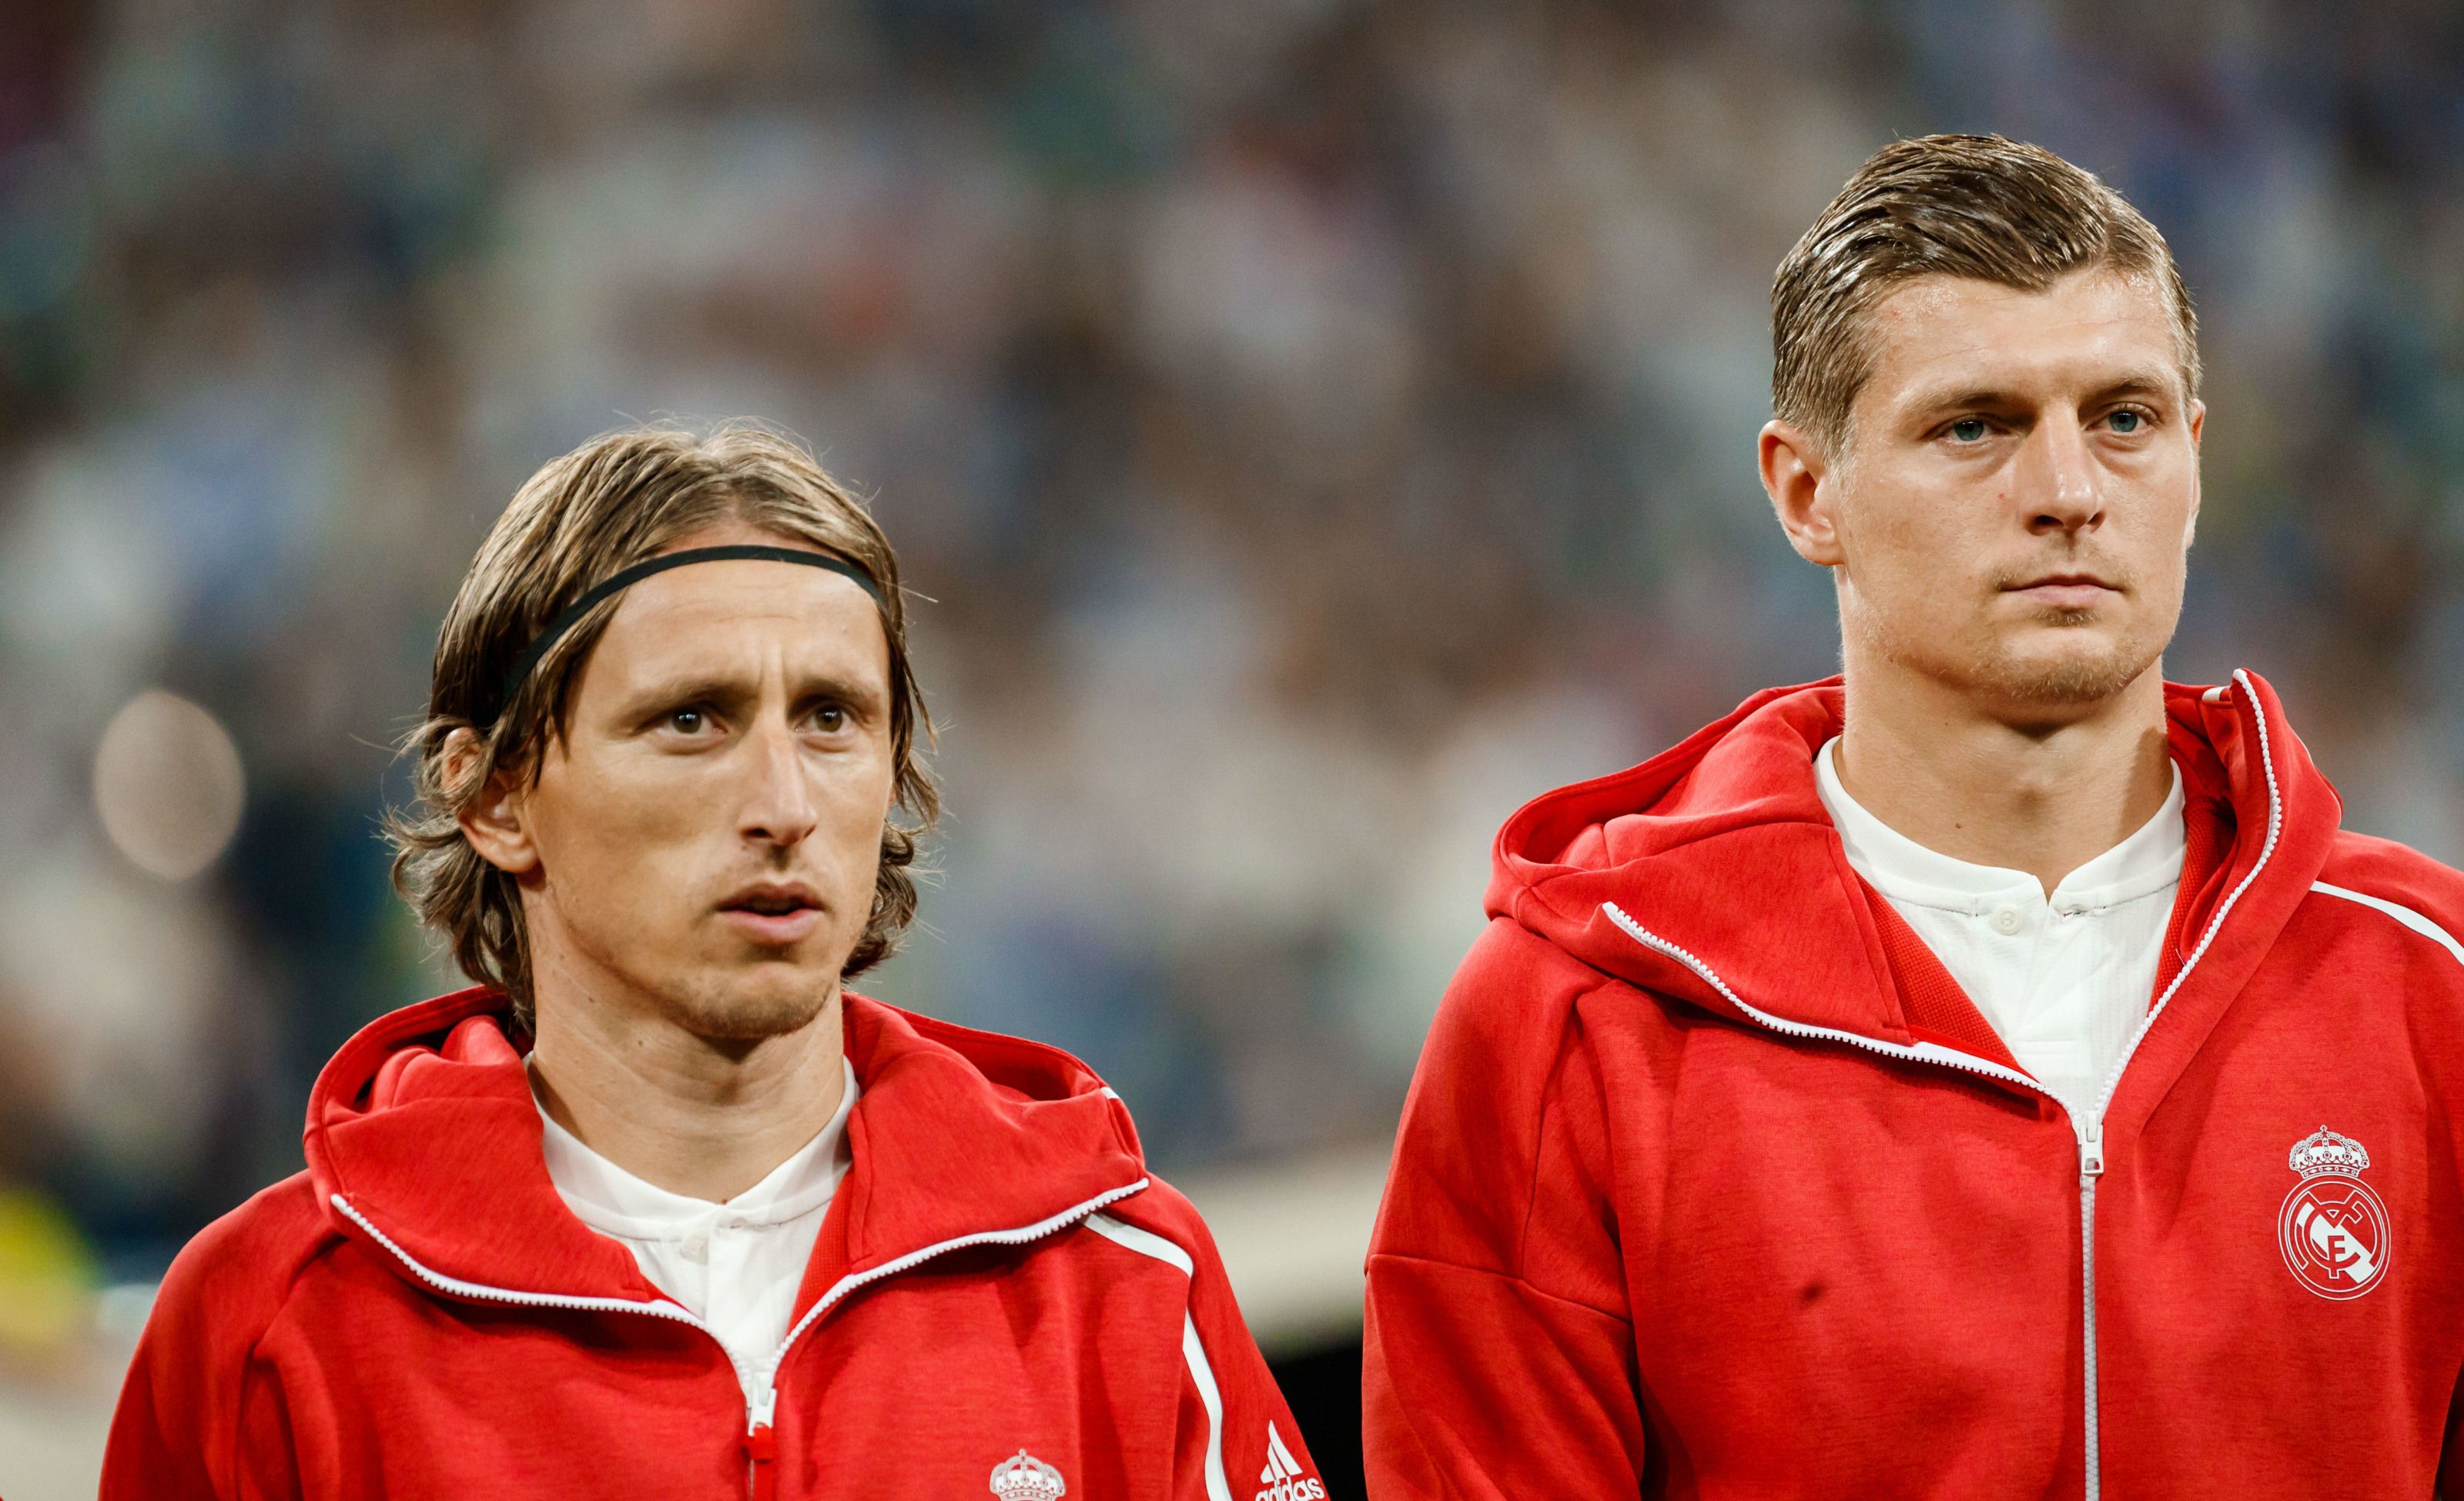 Real Madrid: Are Luka Modric, Toni Kroos too important?